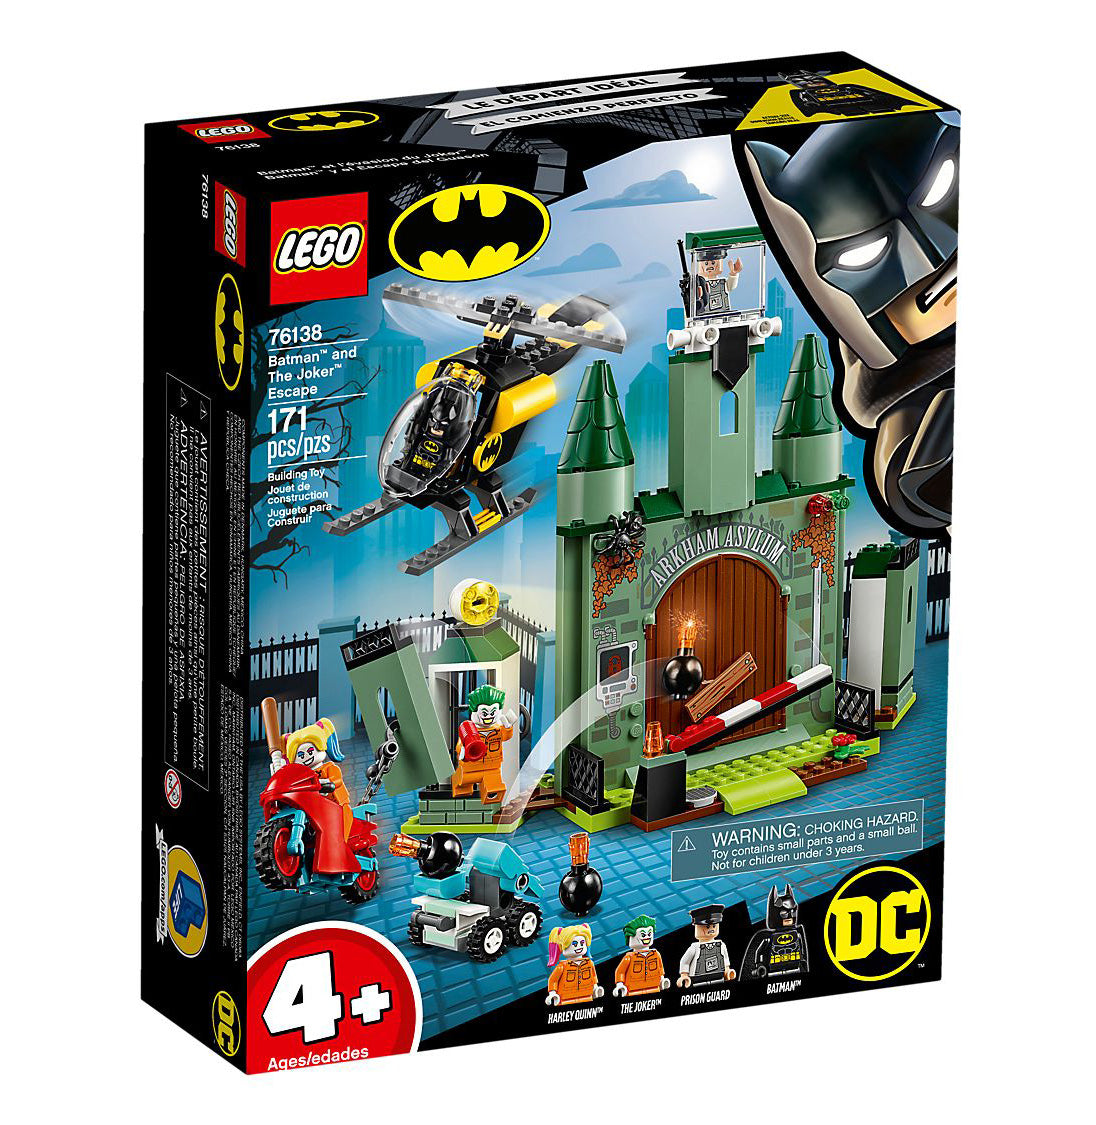 Lego DC Comics Super Heroes Batman & The Joker Escape 76138